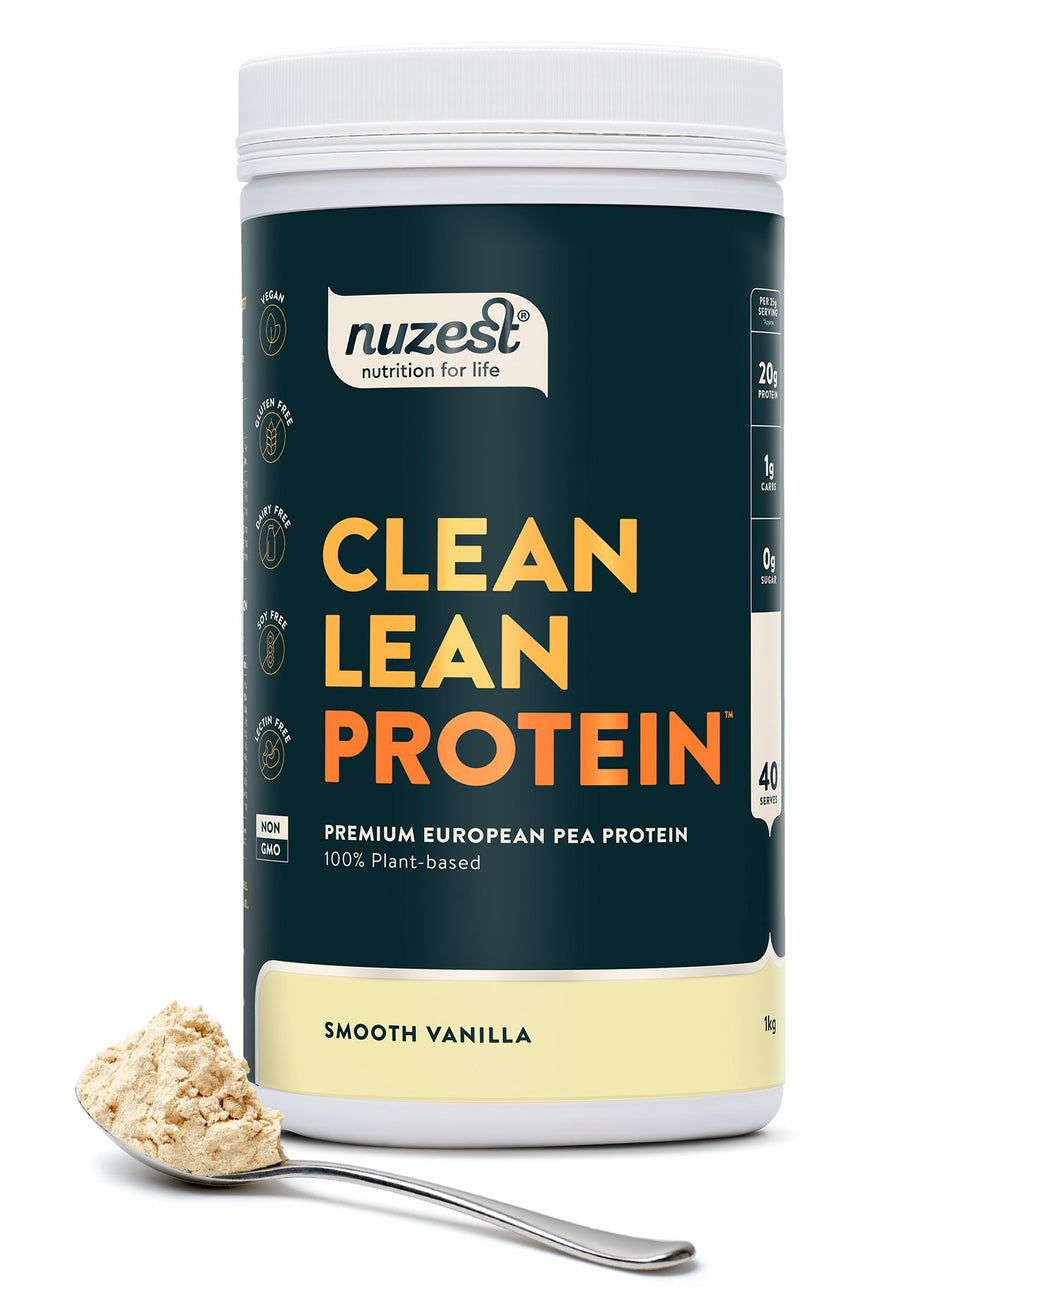 NuZest Clean Lean Protein Smooth Vanilla